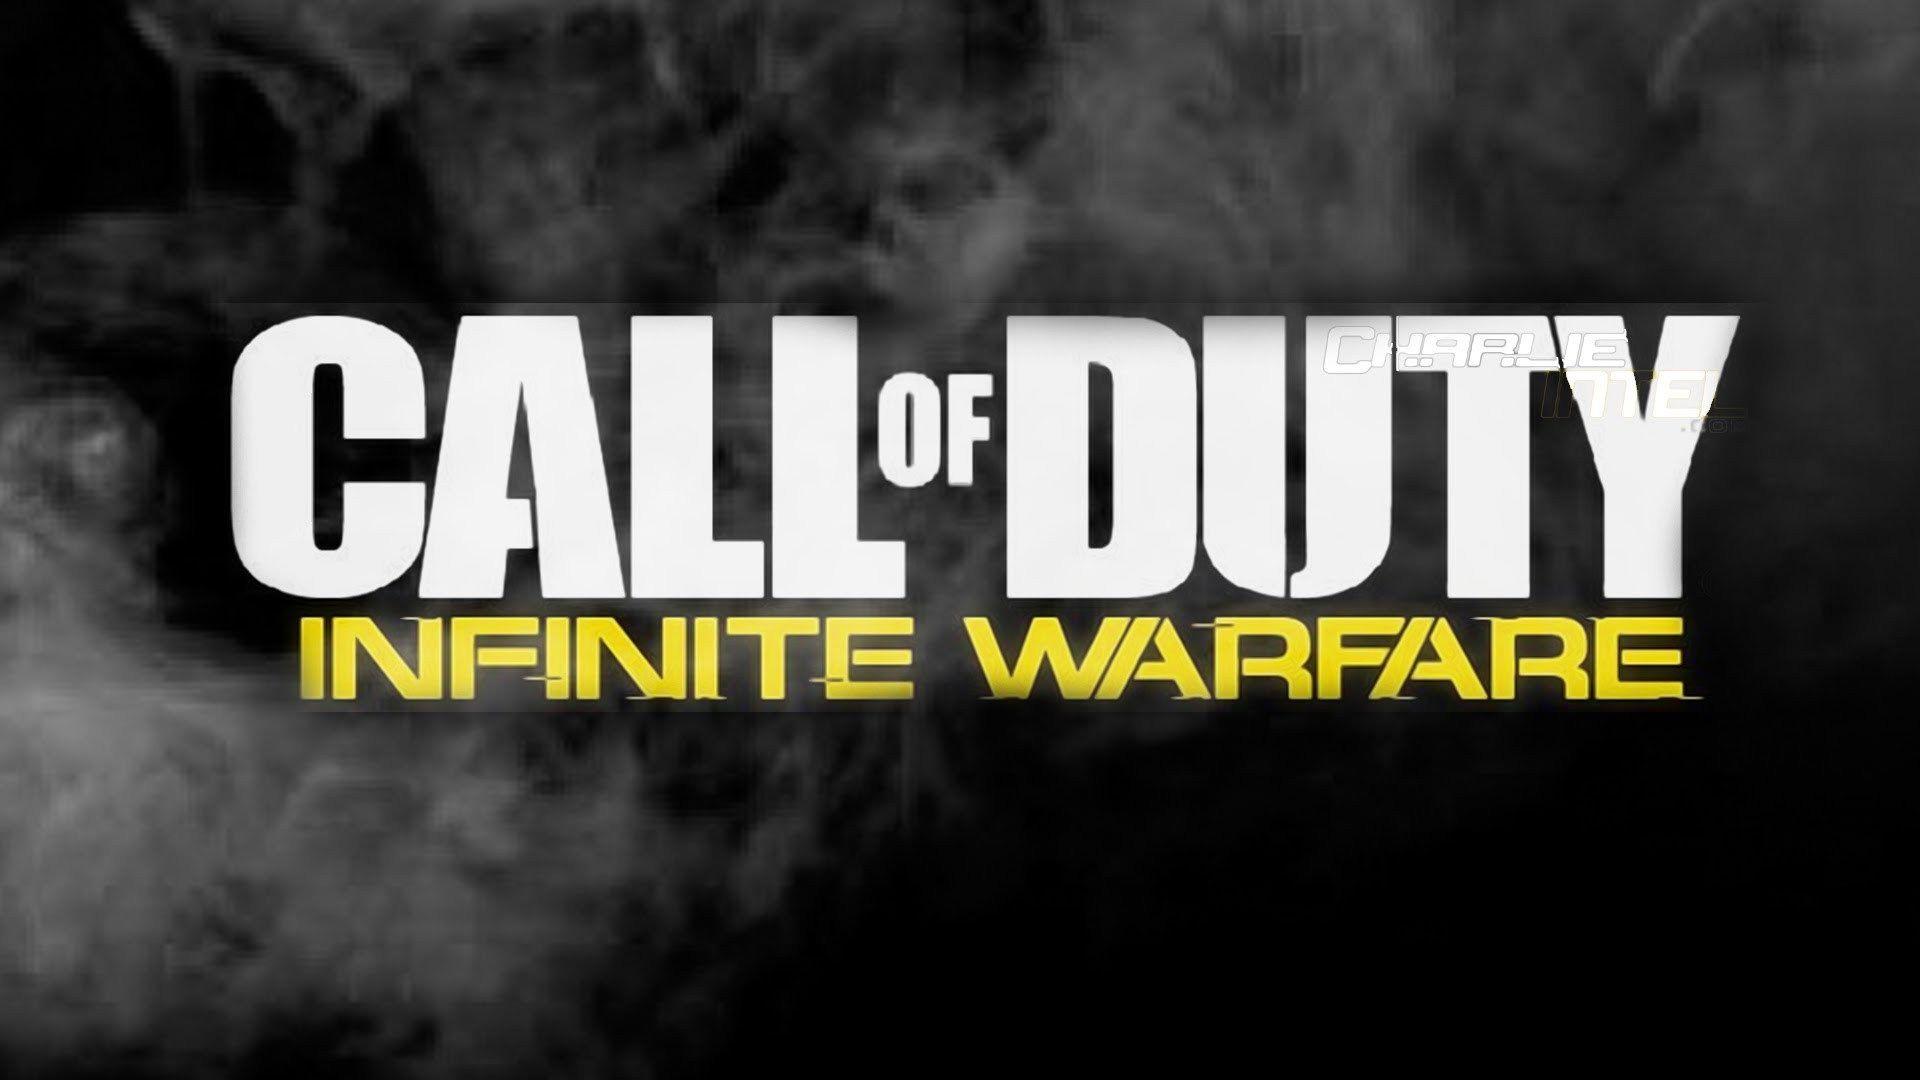 Call of Duty: Infinite Warfare Wallpaper Image Photo Picture